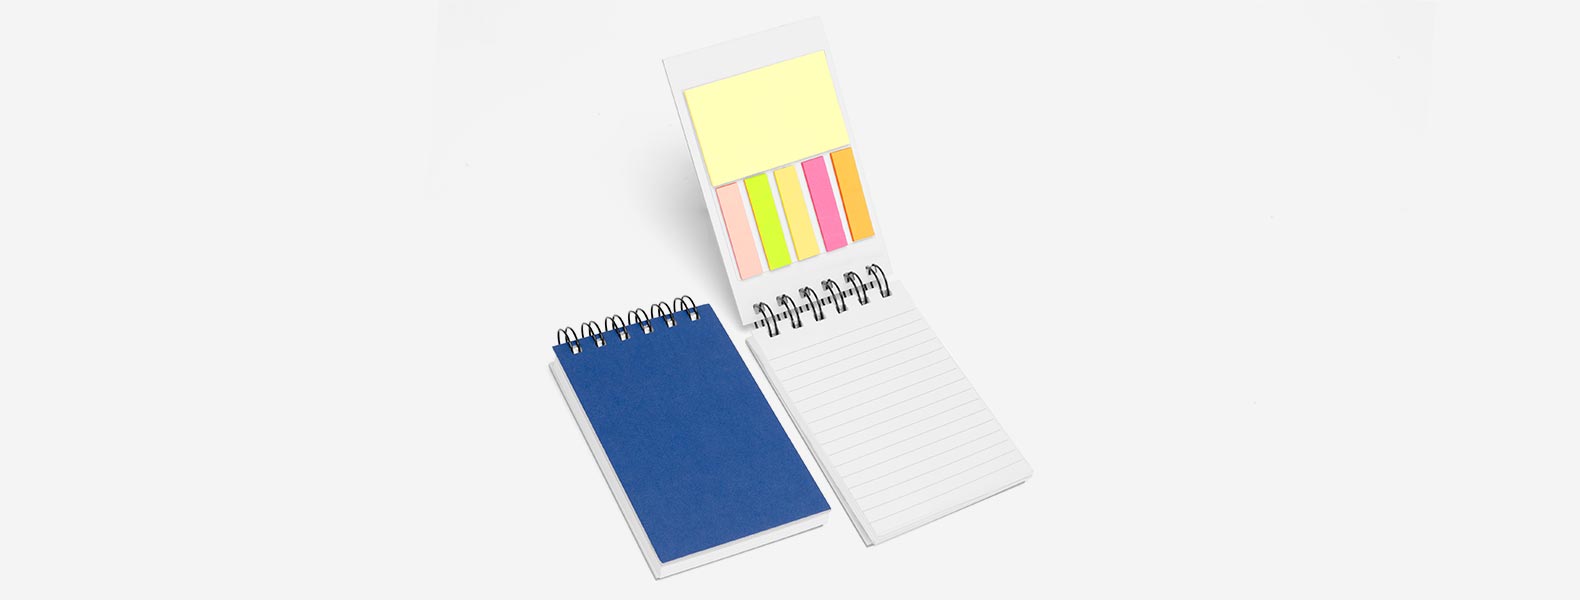 Caderno para anotações azul com capa dura. Conta com 100 folhas pautadas com fechamento wire-o e 5 cores com 25 folhas autocolantes.